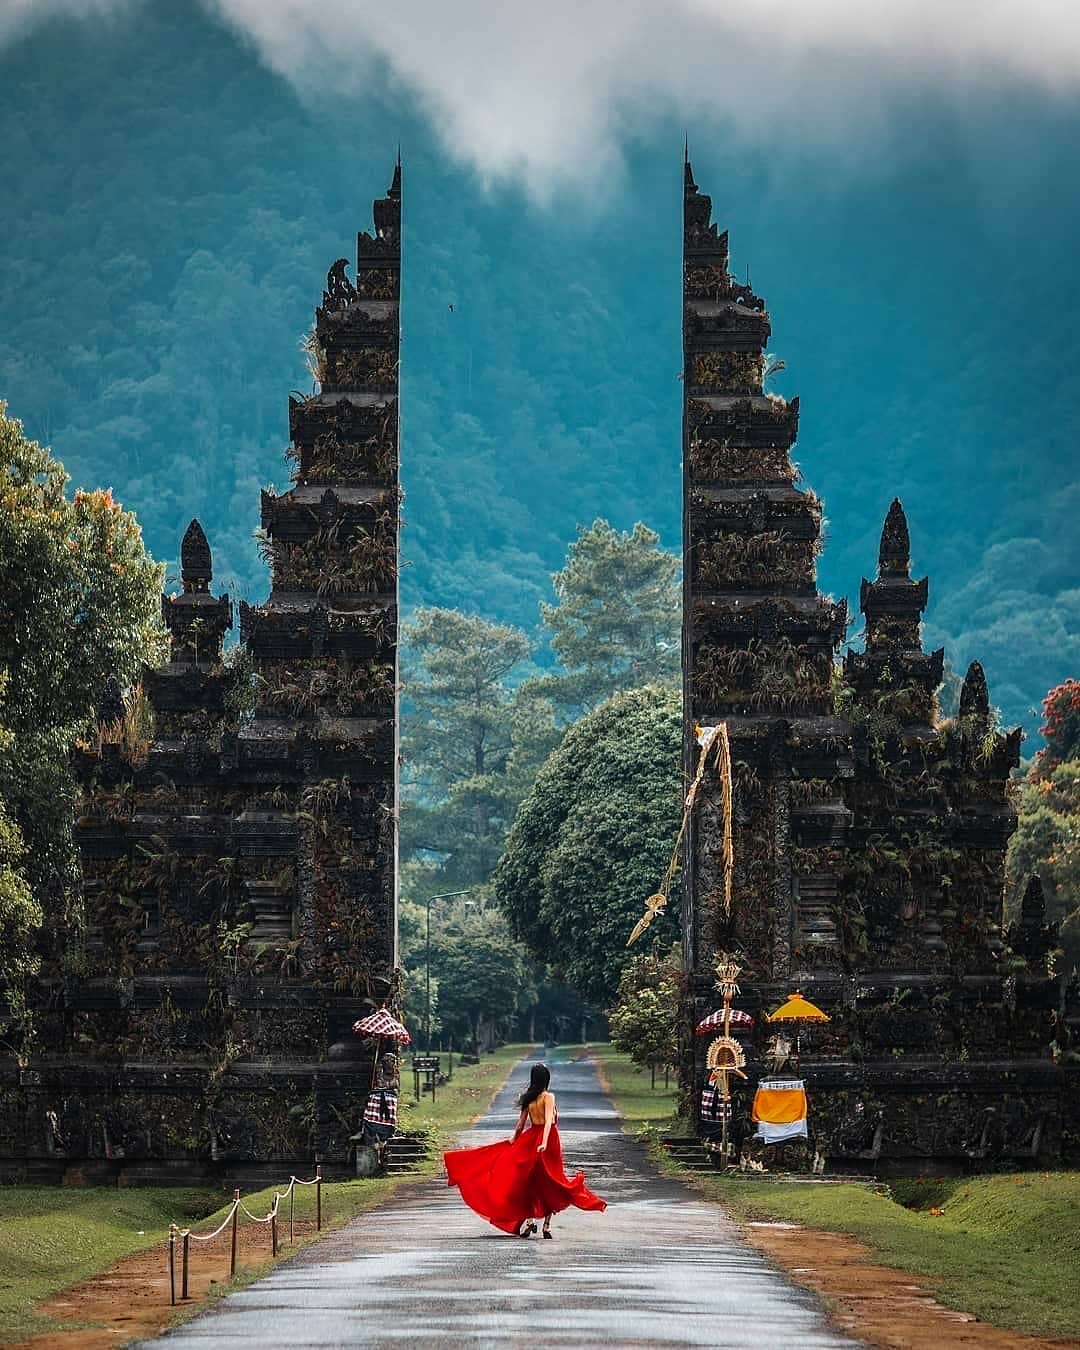 Kinh nghiệm du lịch Bali tự túc